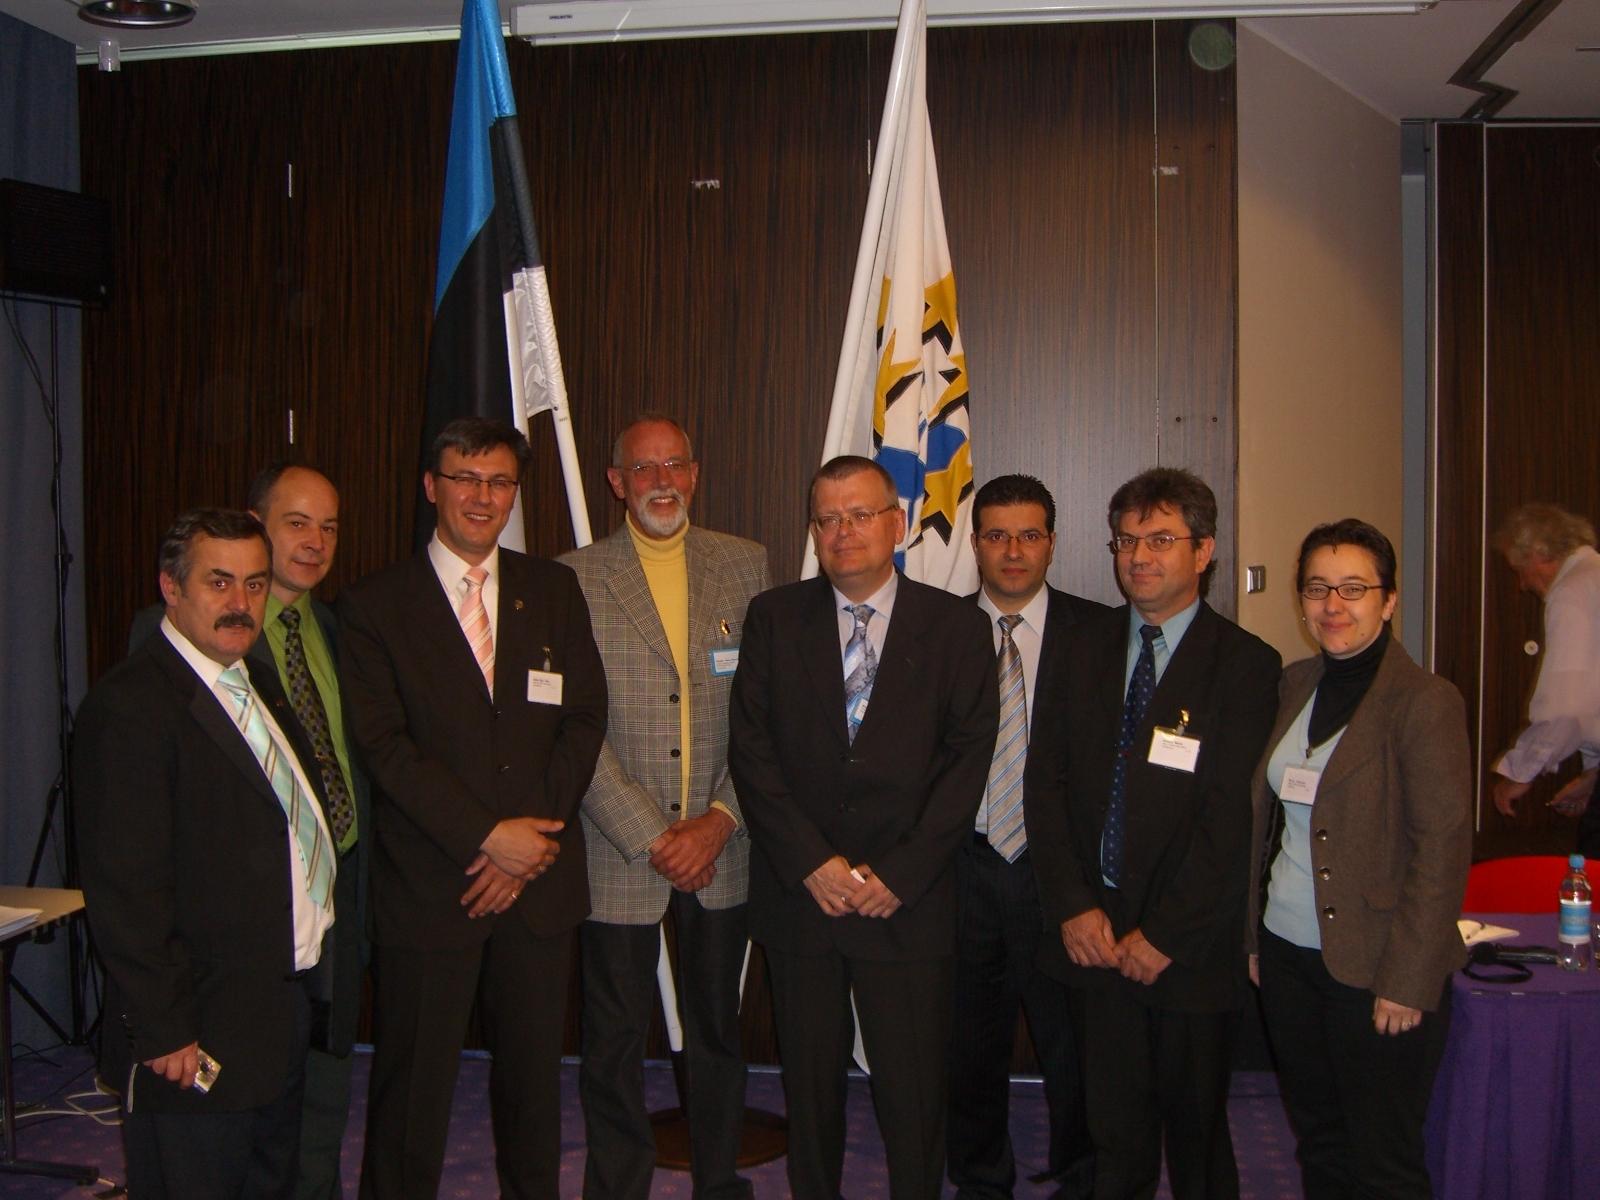 Avrupa Batı Trakya Türk Federasyonu (ABTTF) FUEN üyeliğine kabul edildi.